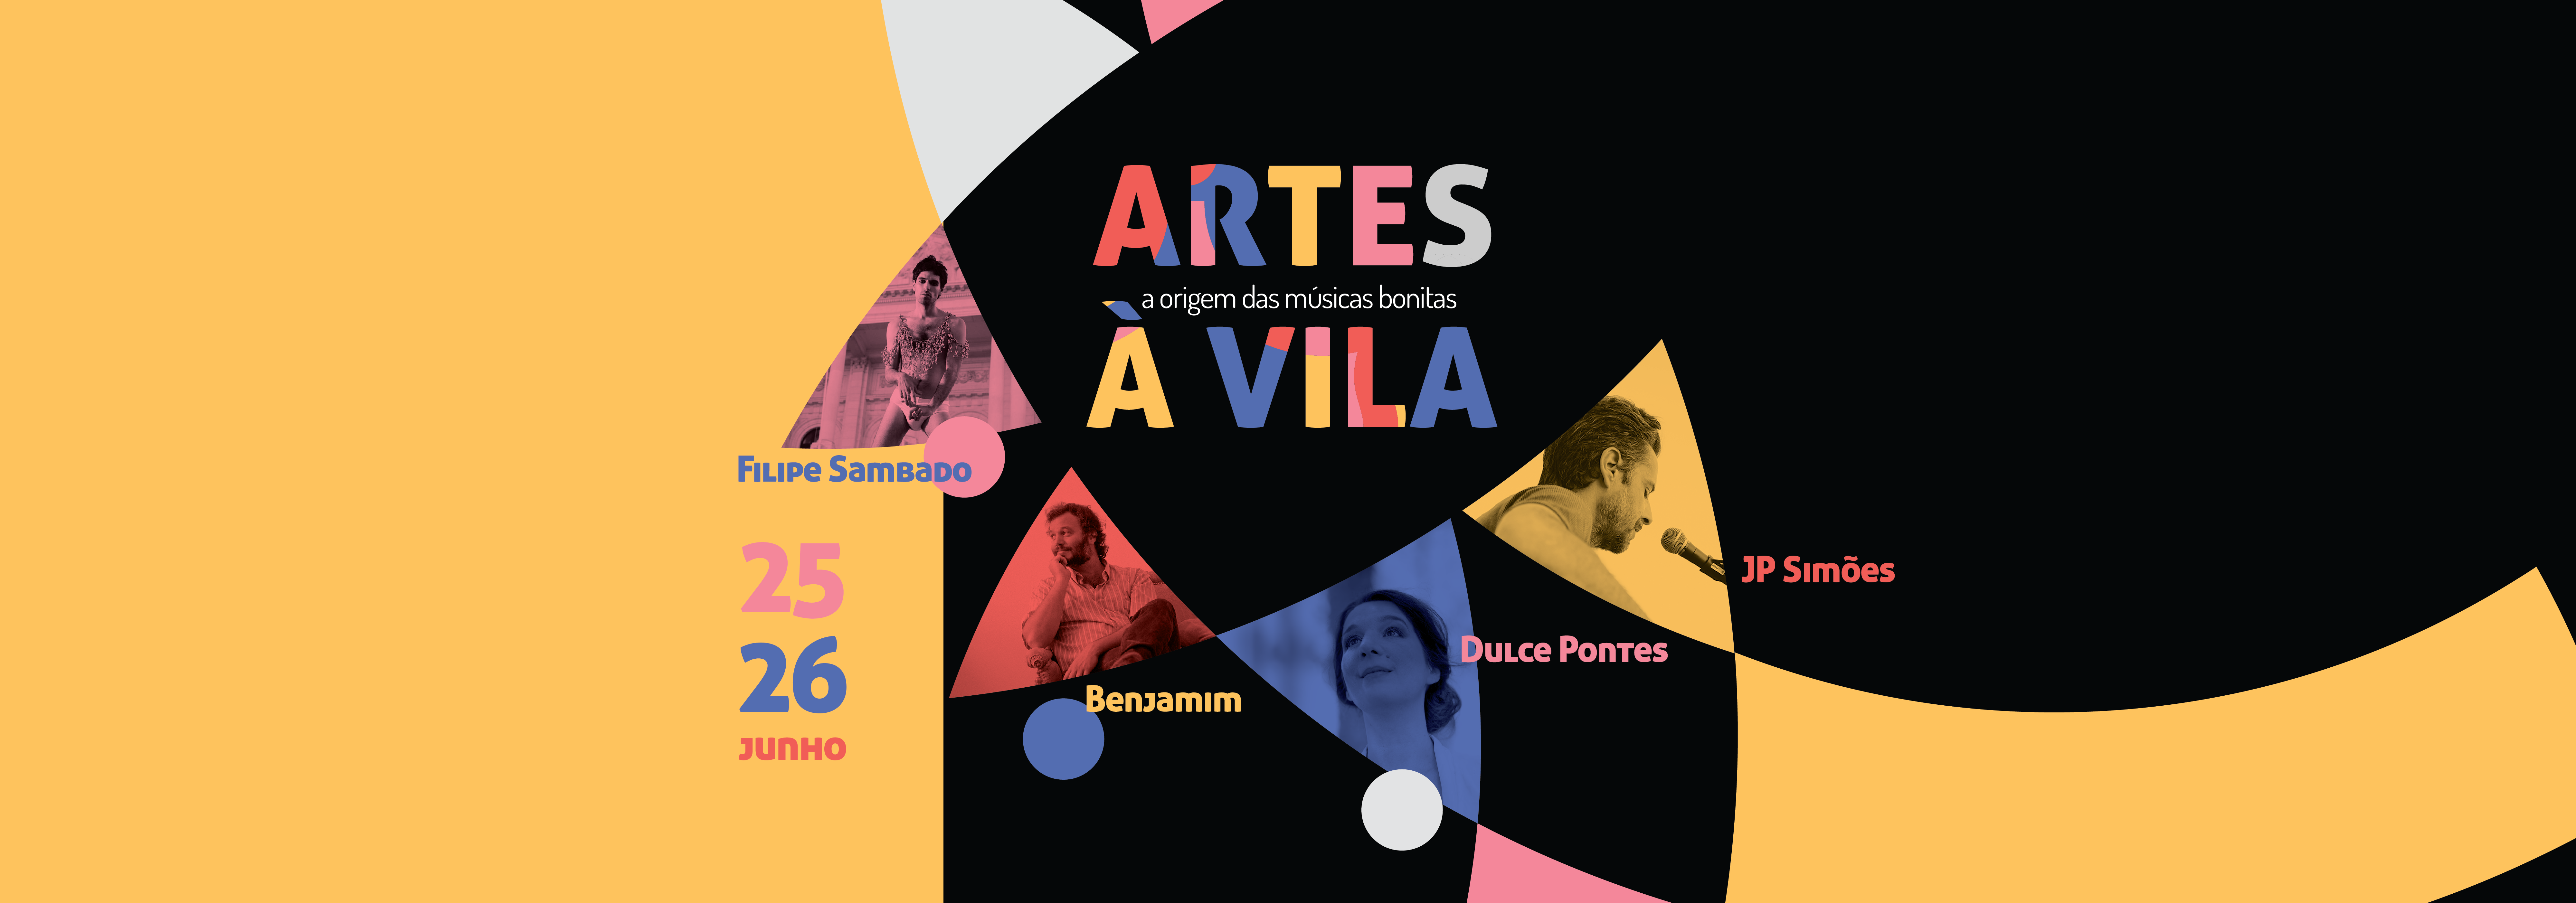 Artes à Vila 2021